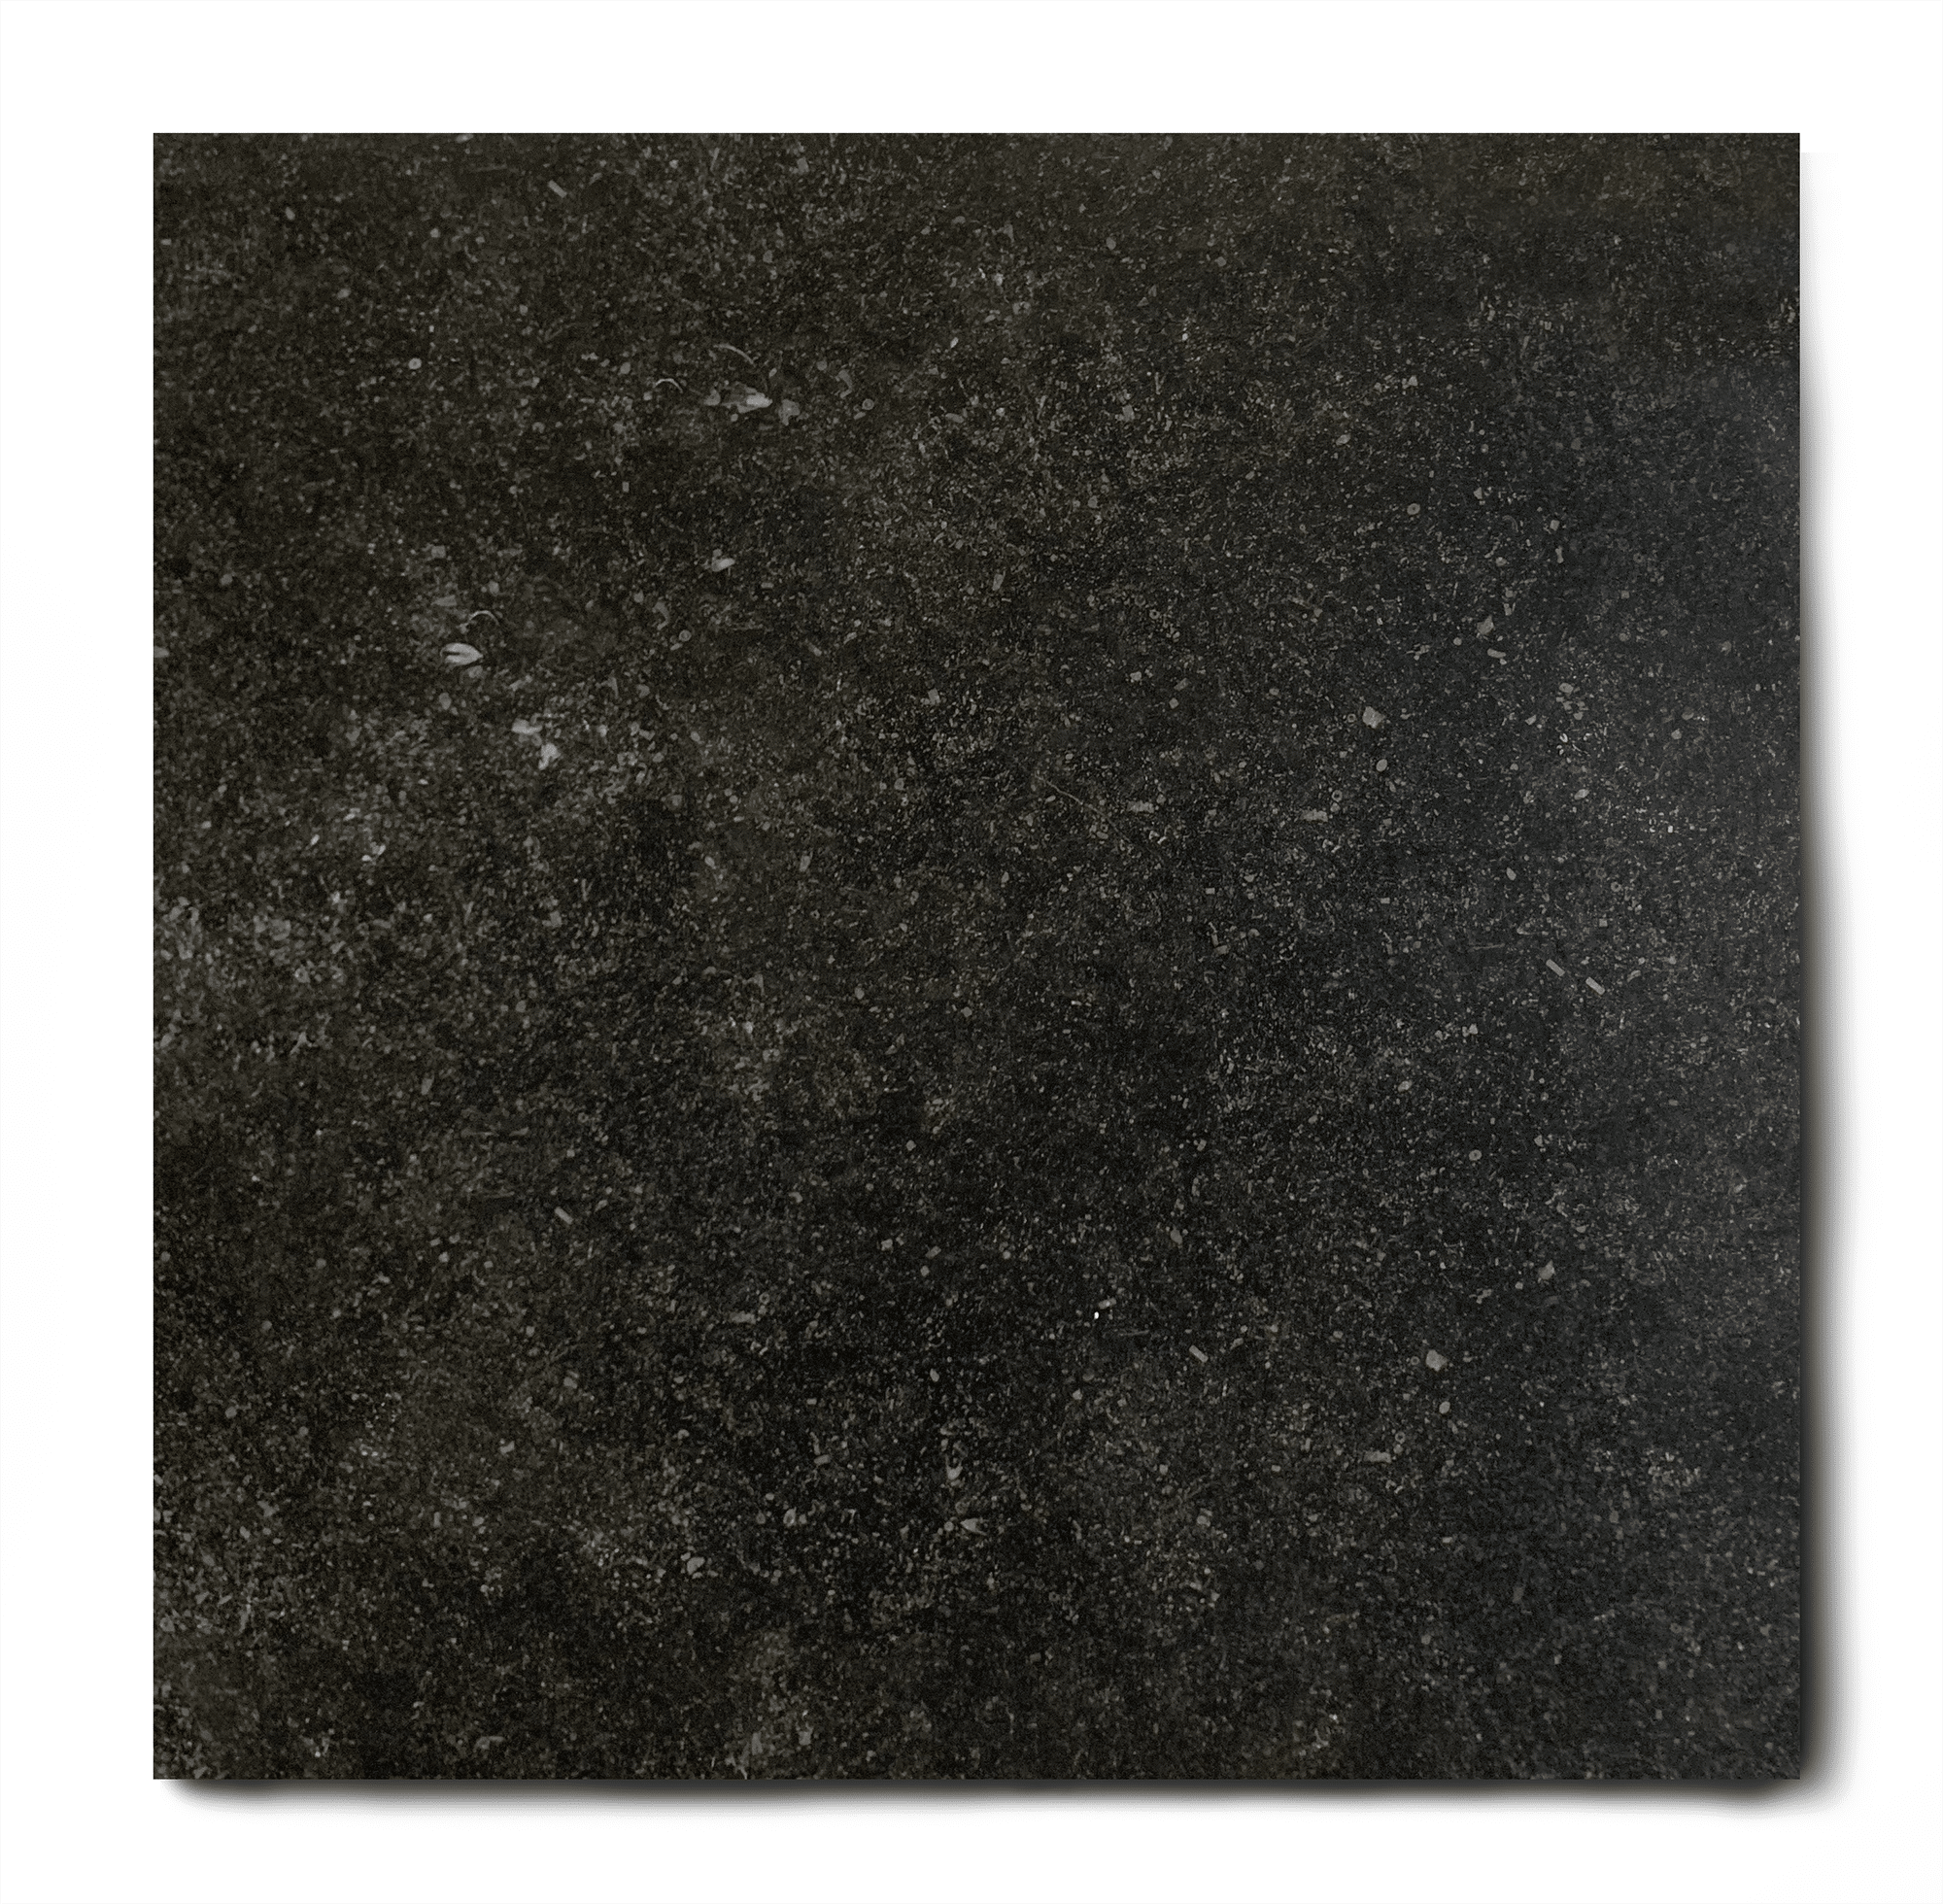 links Hesje In de naam Vloertegel 80x80 cm natuursteen look belgisch hardsteen zwart E12